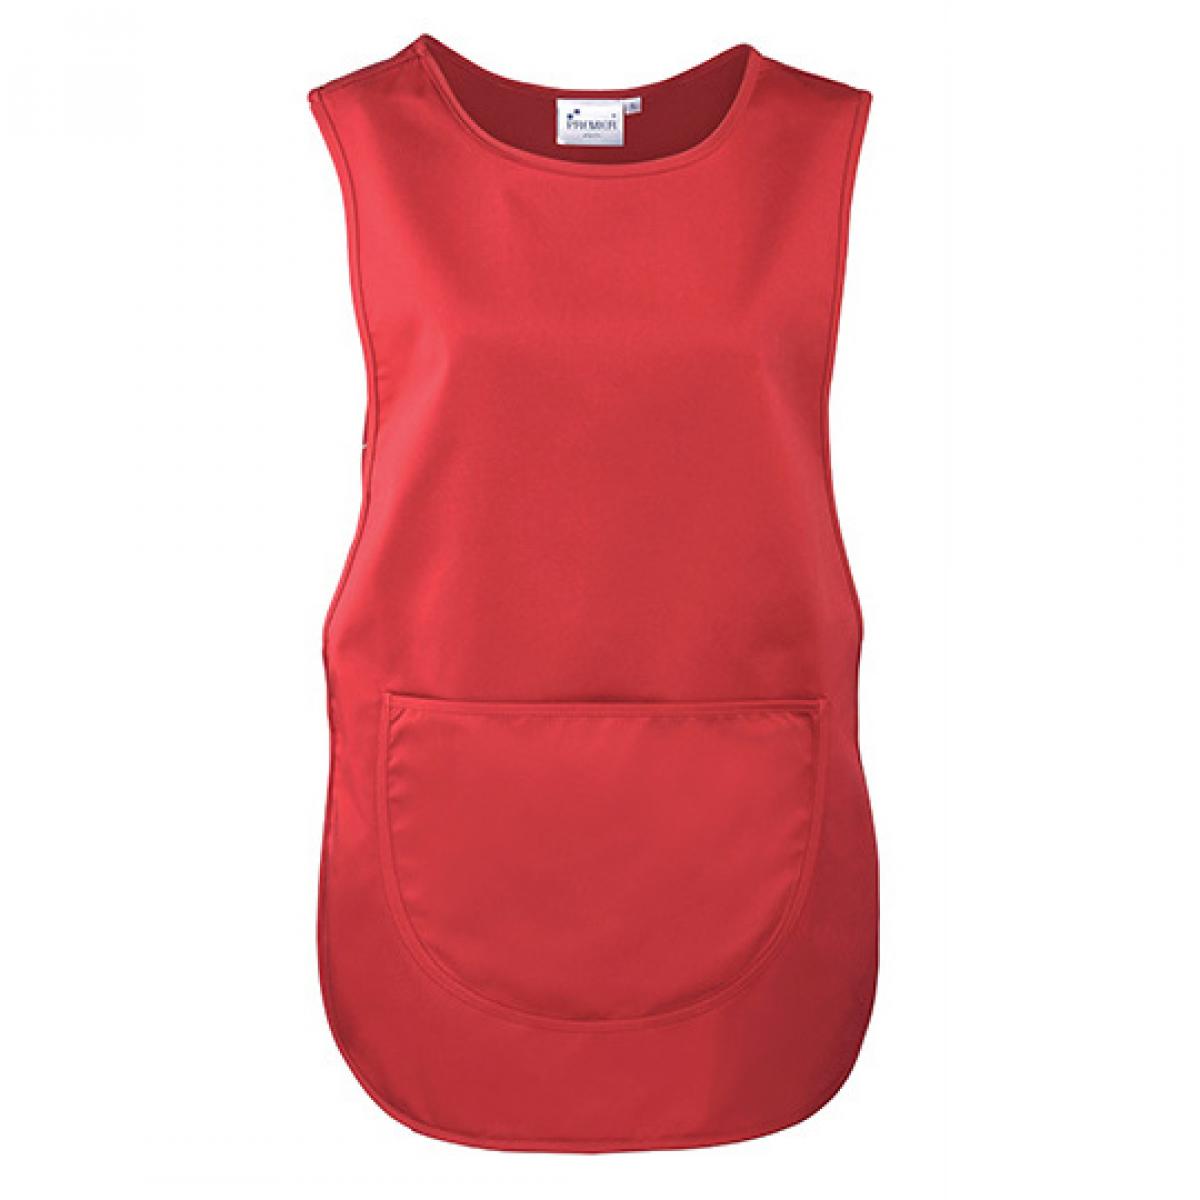 Hersteller: Premier Workwear Herstellernummer: PR171 Artikelbezeichnung: Women`s Pocket Tabard - Waschbar bis 60 °C Farbe: Red (ca. Pantone 200)